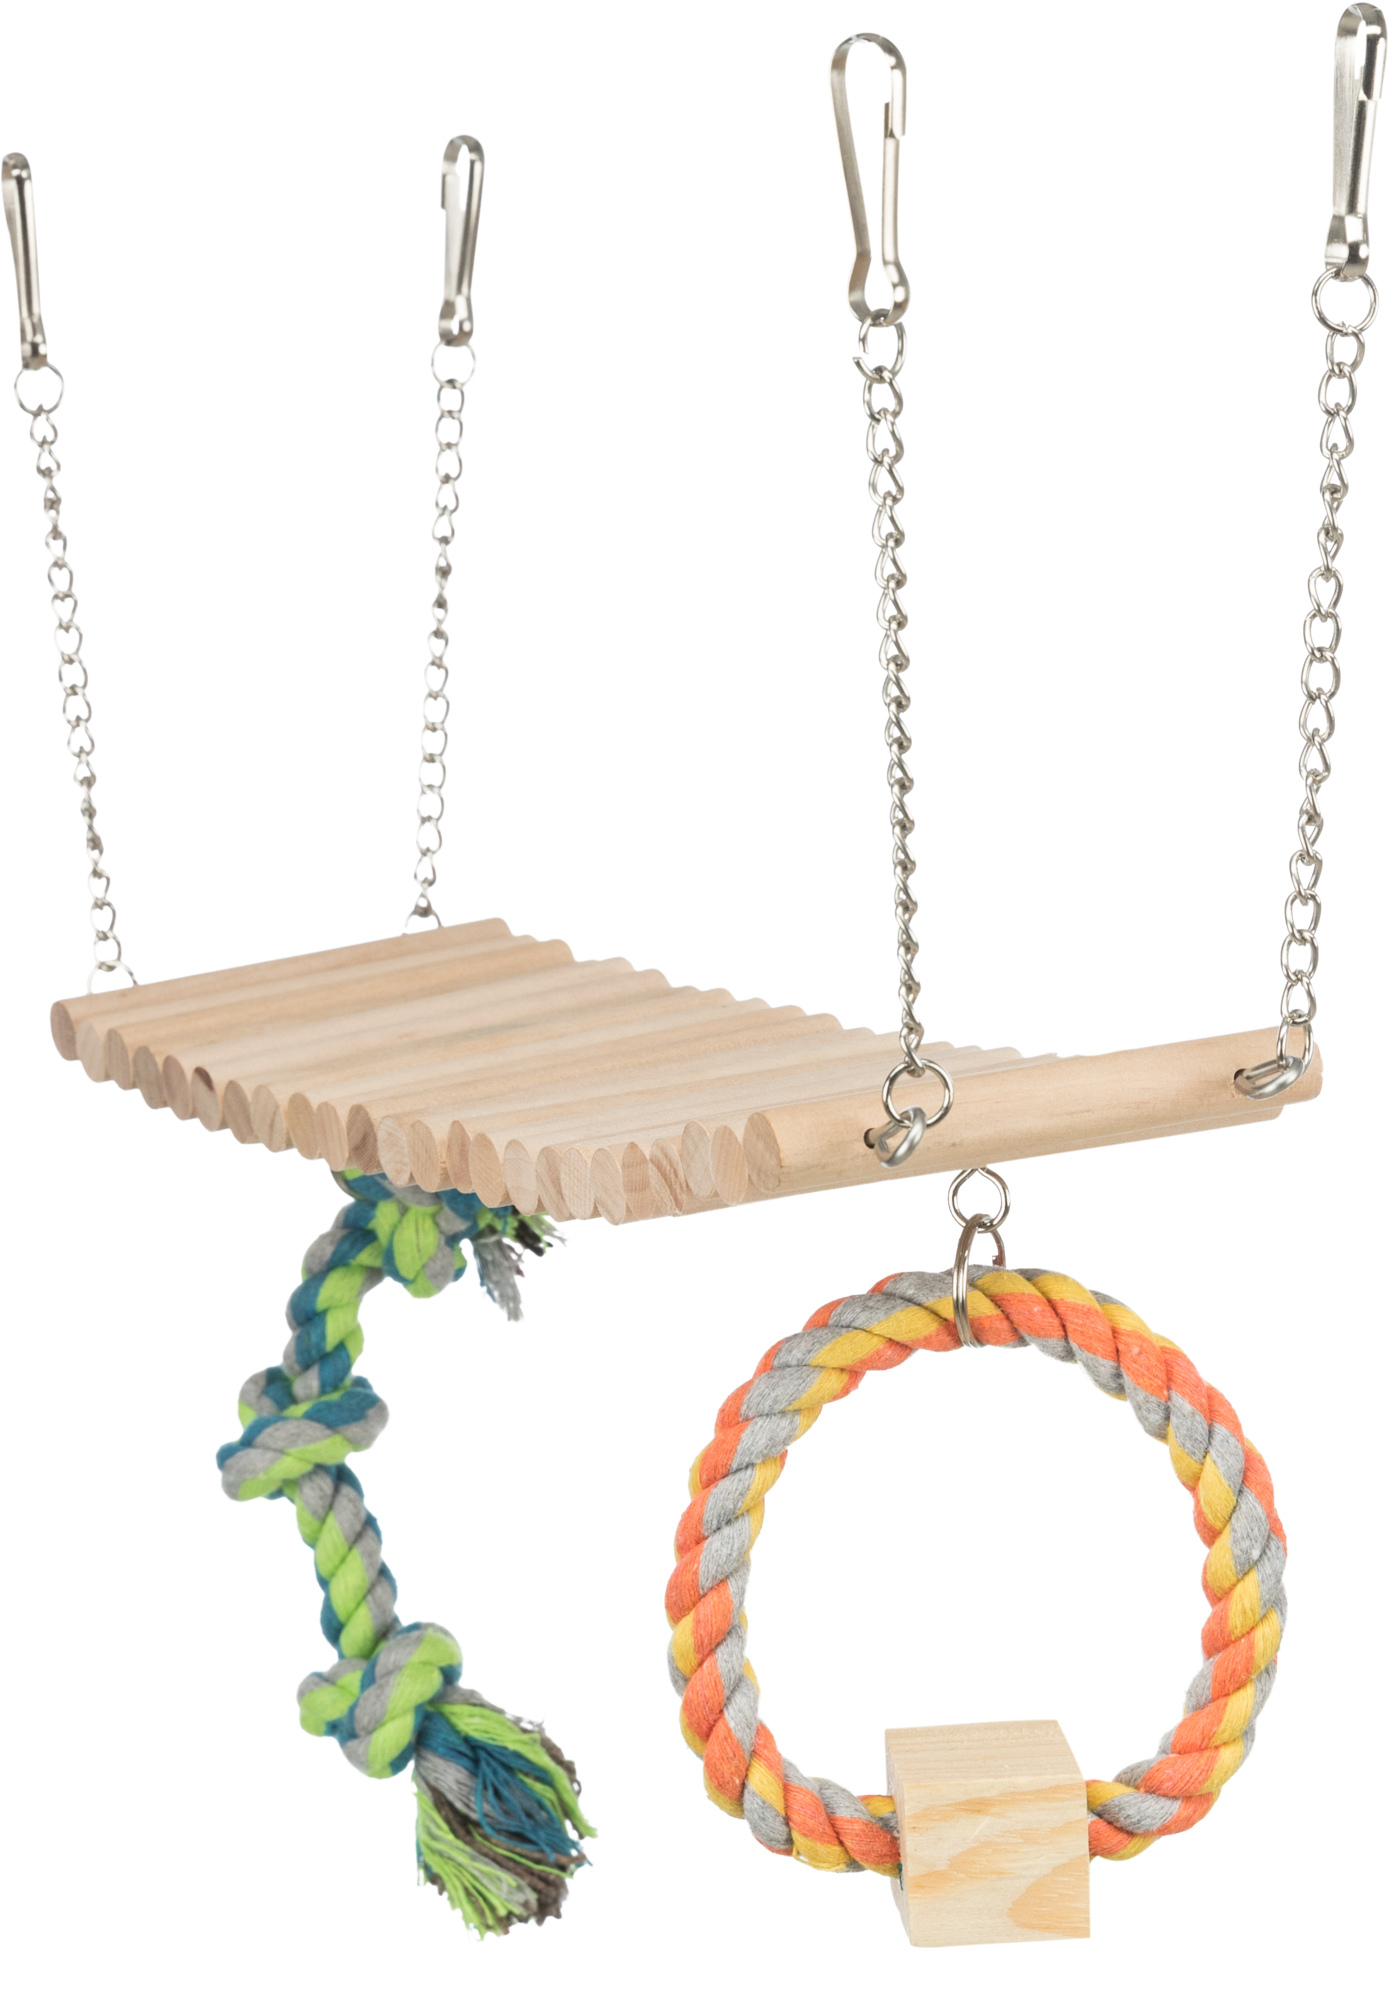 Hängebrücke aus Holz mit Seil und Nagetierspielzeug